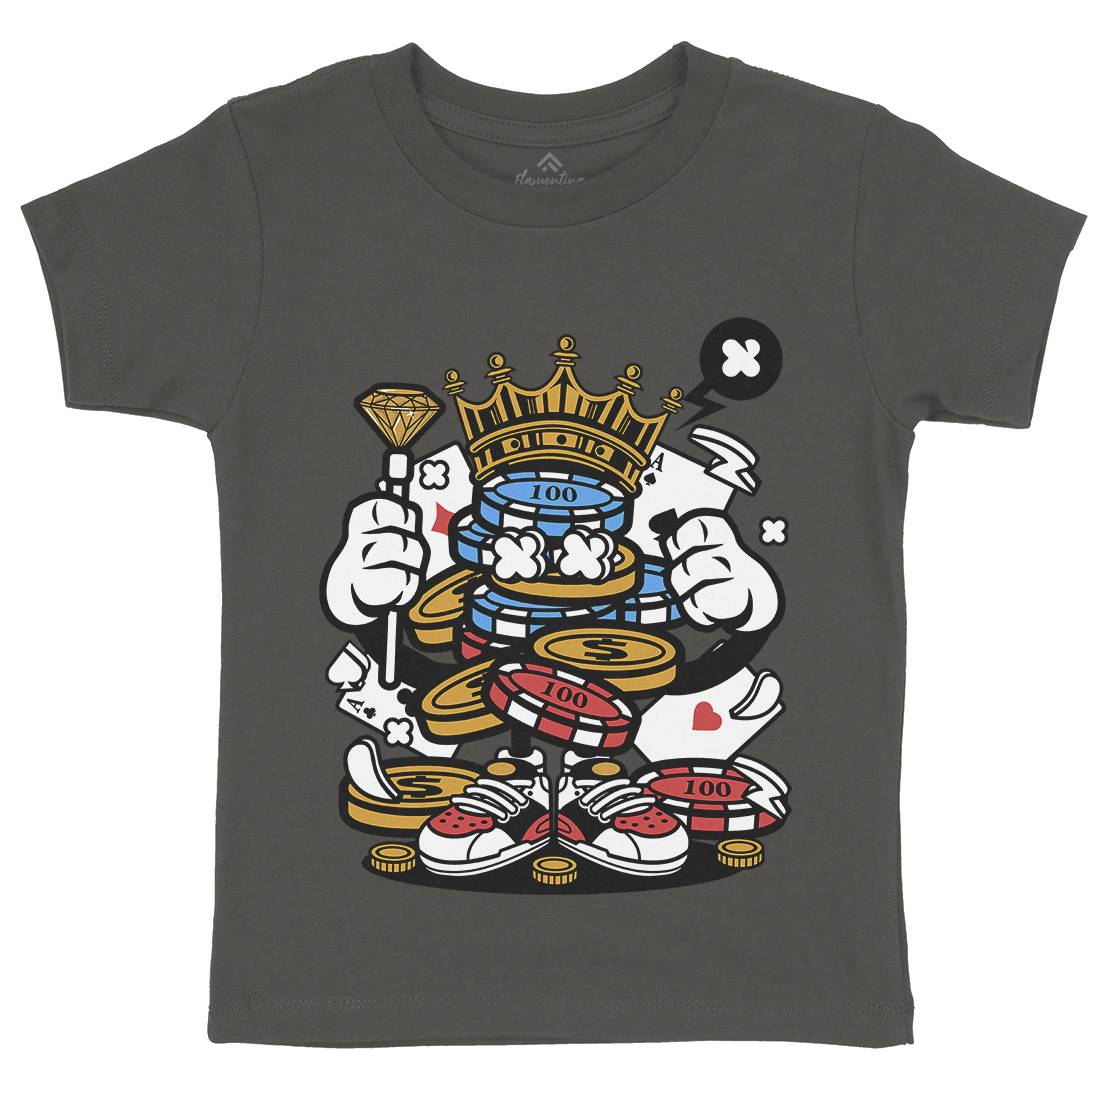 King Of Gambler Kids Organic Crew Neck T-Shirt Retro C159